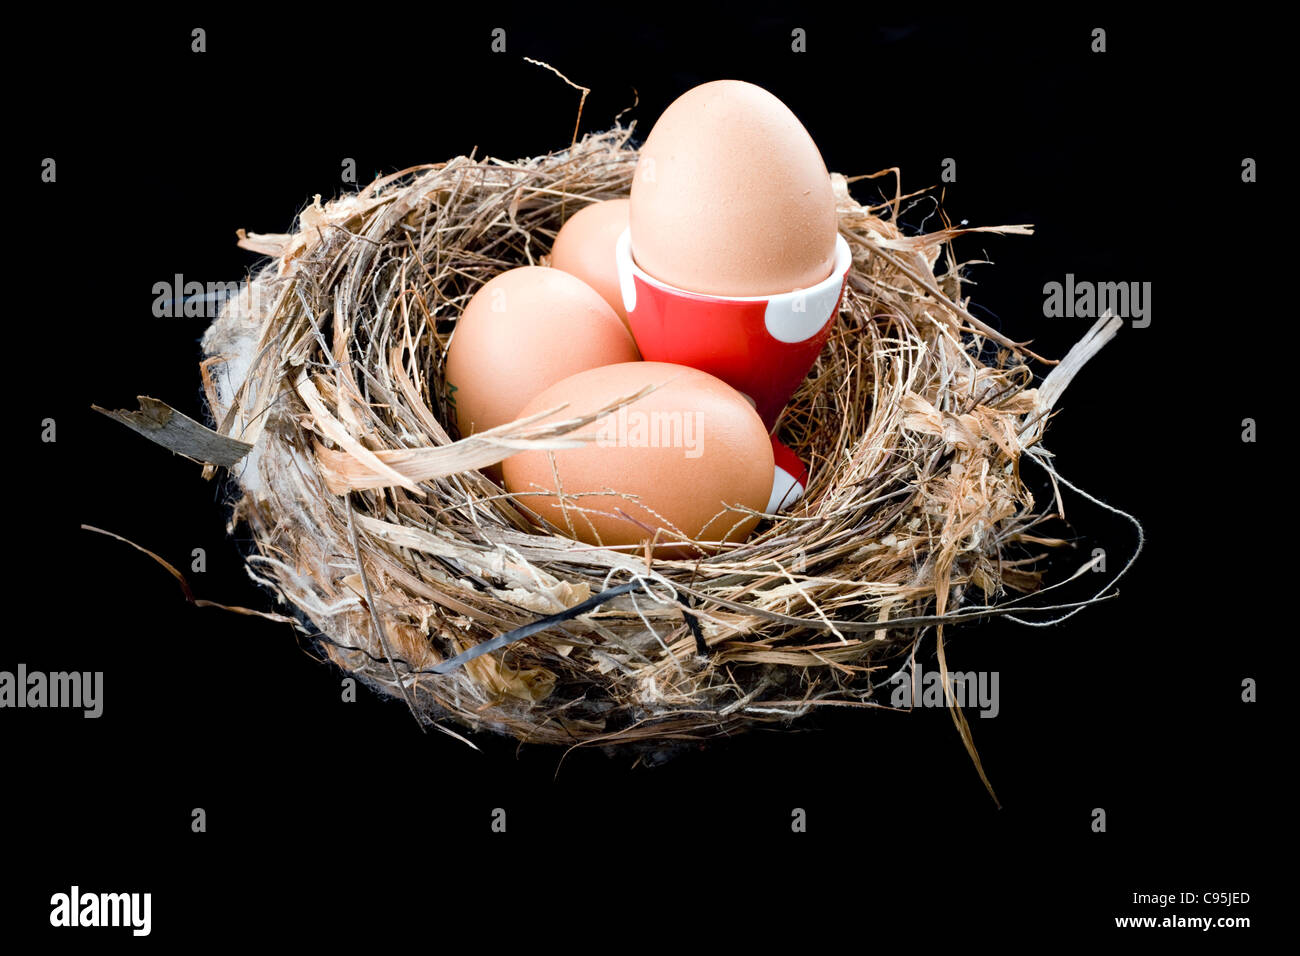 Eiern in einem Vögel nisten 1 Ei in einen Eierbecher von roten und weißen Tupfen Stockfoto